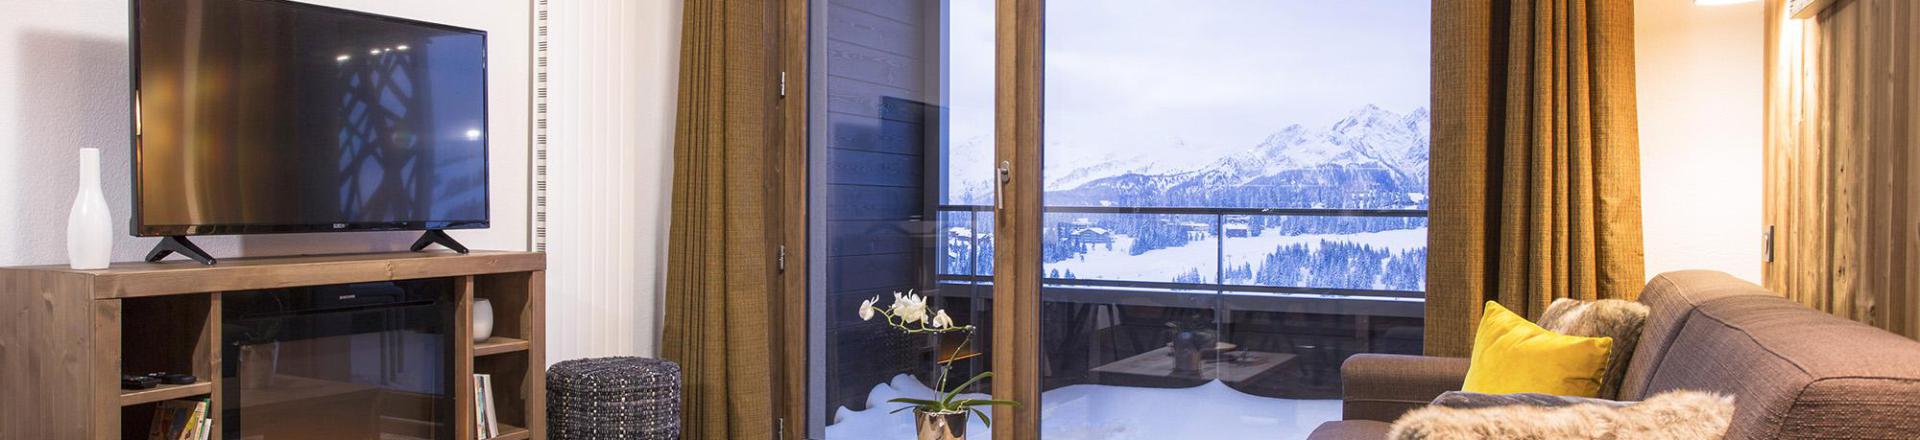 Rent in ski resort Résidence Club MMV Les Chalets des Cîmes - Les Saisies - Living area